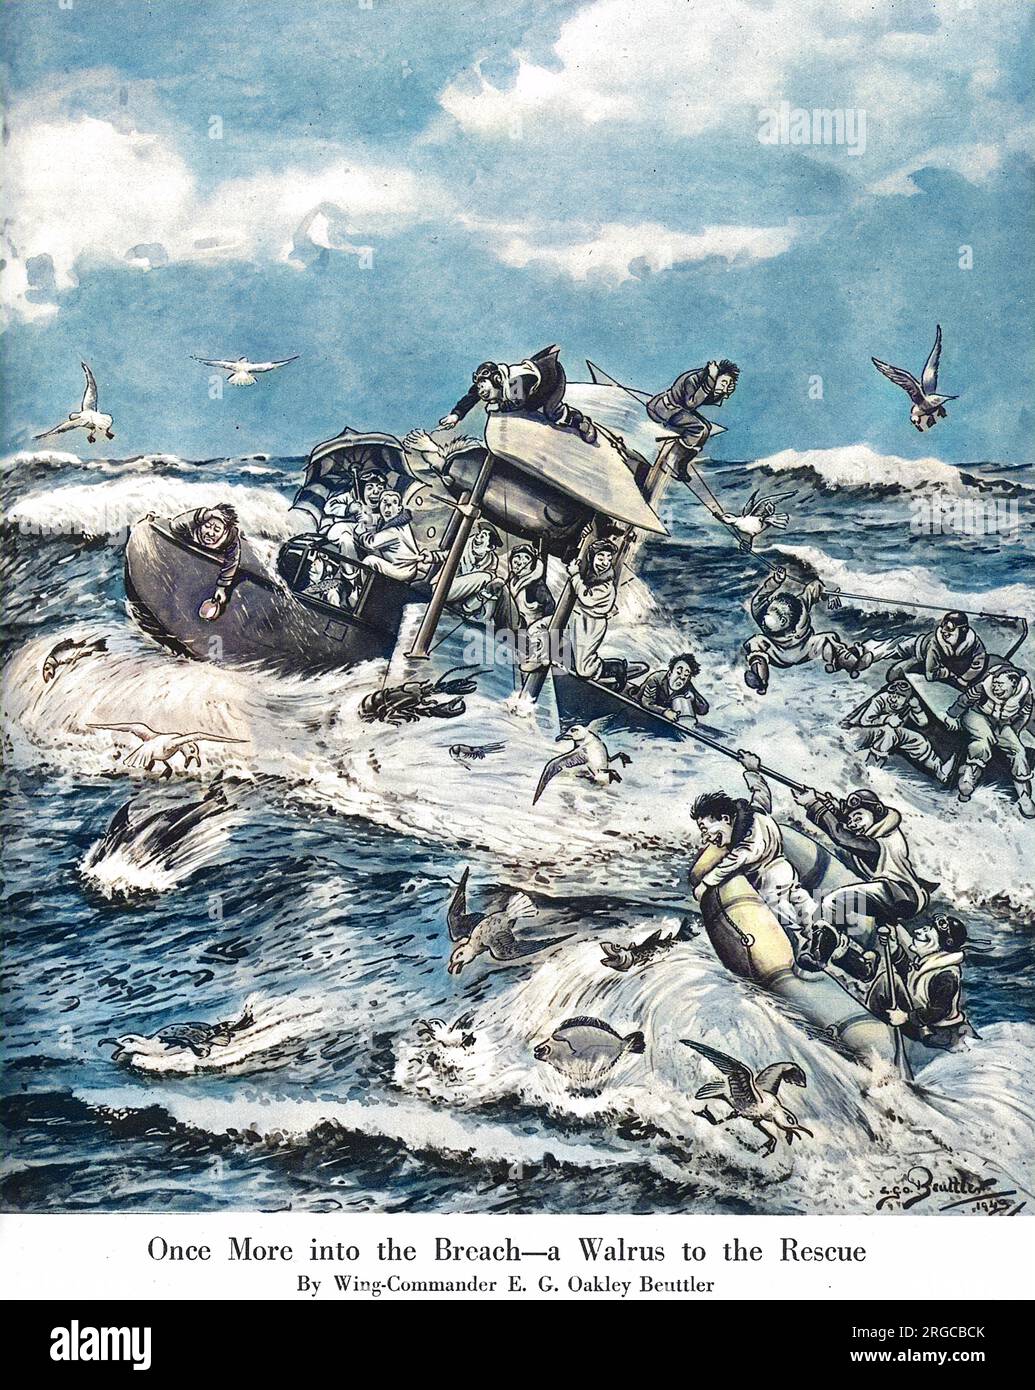 Humorvolle Illustration VON Z. B. Oakley-Beuttler, die die Luft-See-Rettung mit einem Amphibienbiplane des Shagbat (bekannt als Walrus) über der Nordsee im Zweiten Weltkrieg darstellt. Als acht Männer in einem Dingy tanzten, kam das Flugzeug auf das Meer und nahm sie alle an Bord. Zu schwer, um auf rauer See abzuheben, fuhr der Pilot über 60 Meilen zum Hafen. Stockfoto